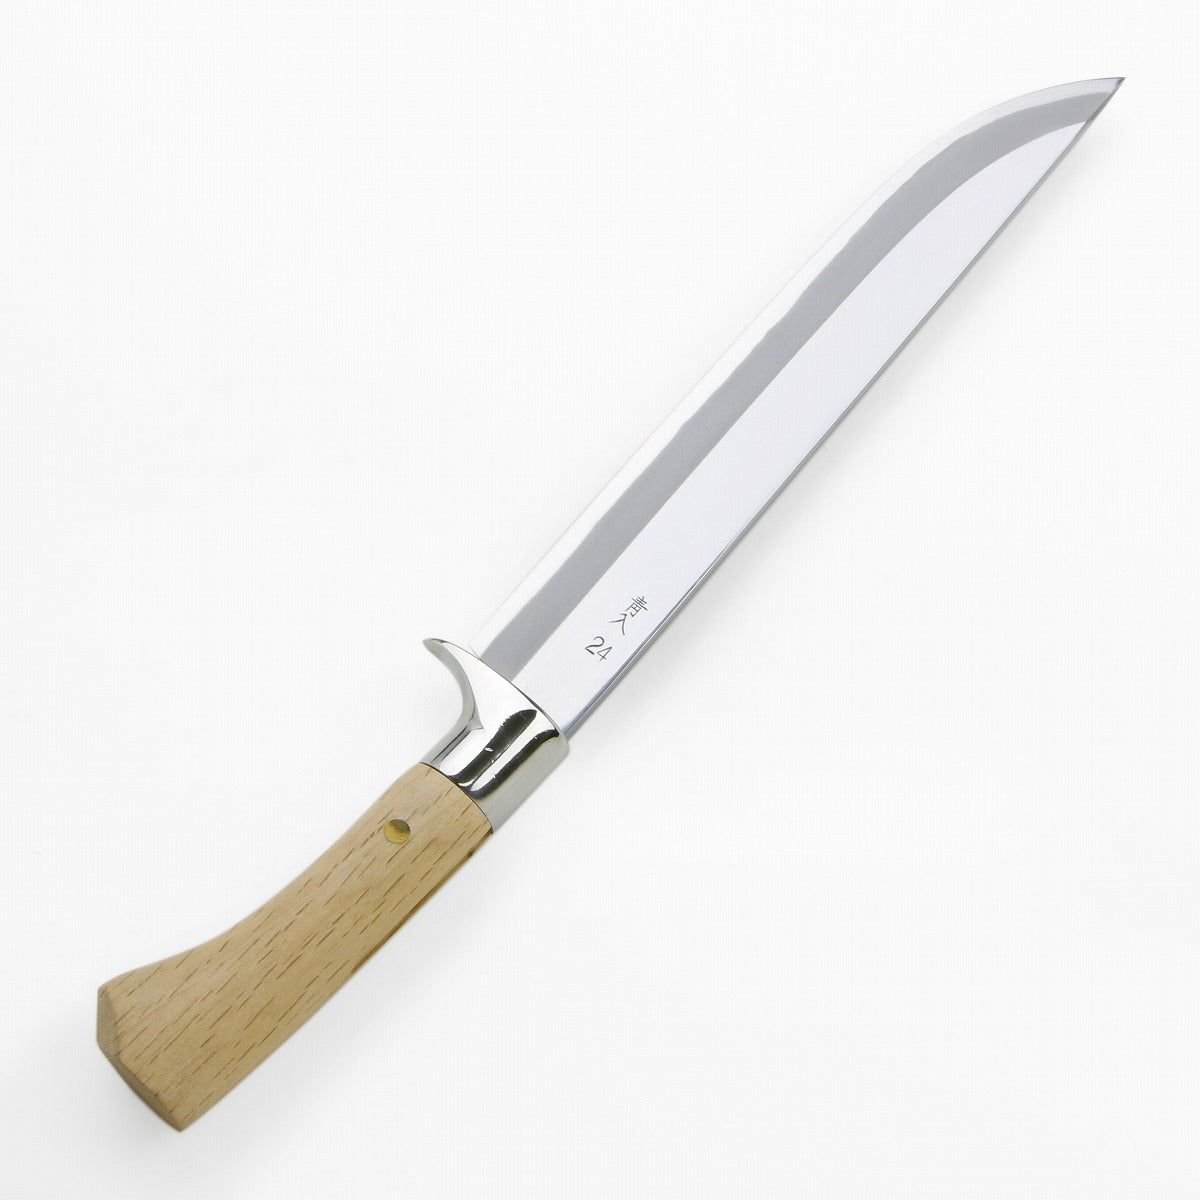 HONMAMON "AZUMASYUSAKU" Hunting Knife with Carving of Nightingale 240mm Japanese Outdoor Knife